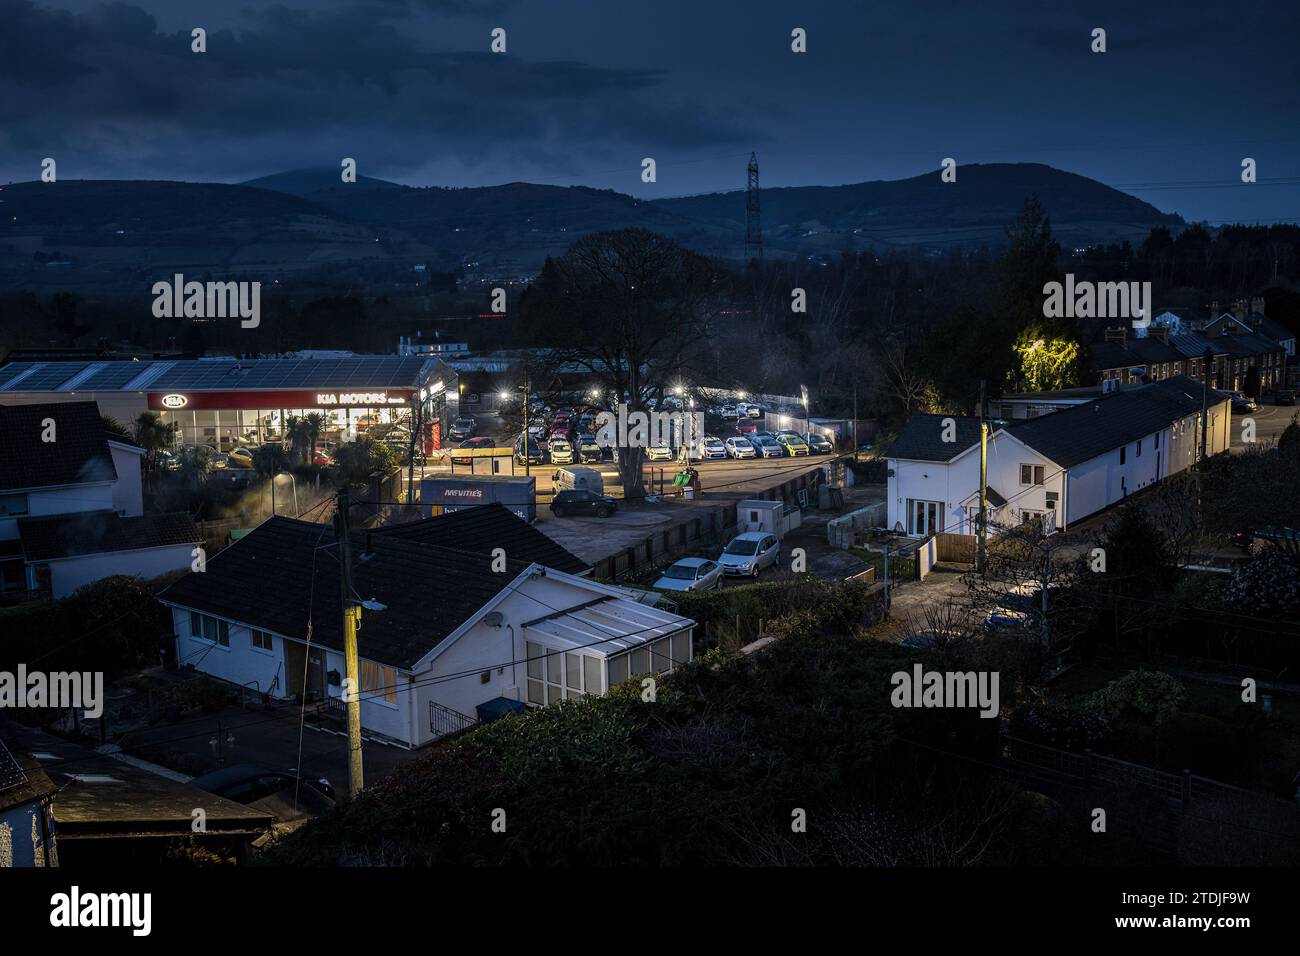 Village la nuit avec des lampadaires et des maisons et la pollution lumineuse du showroom de voiture, Llanfoist, pays de Galles, Royaume-Uni Banque D'Images